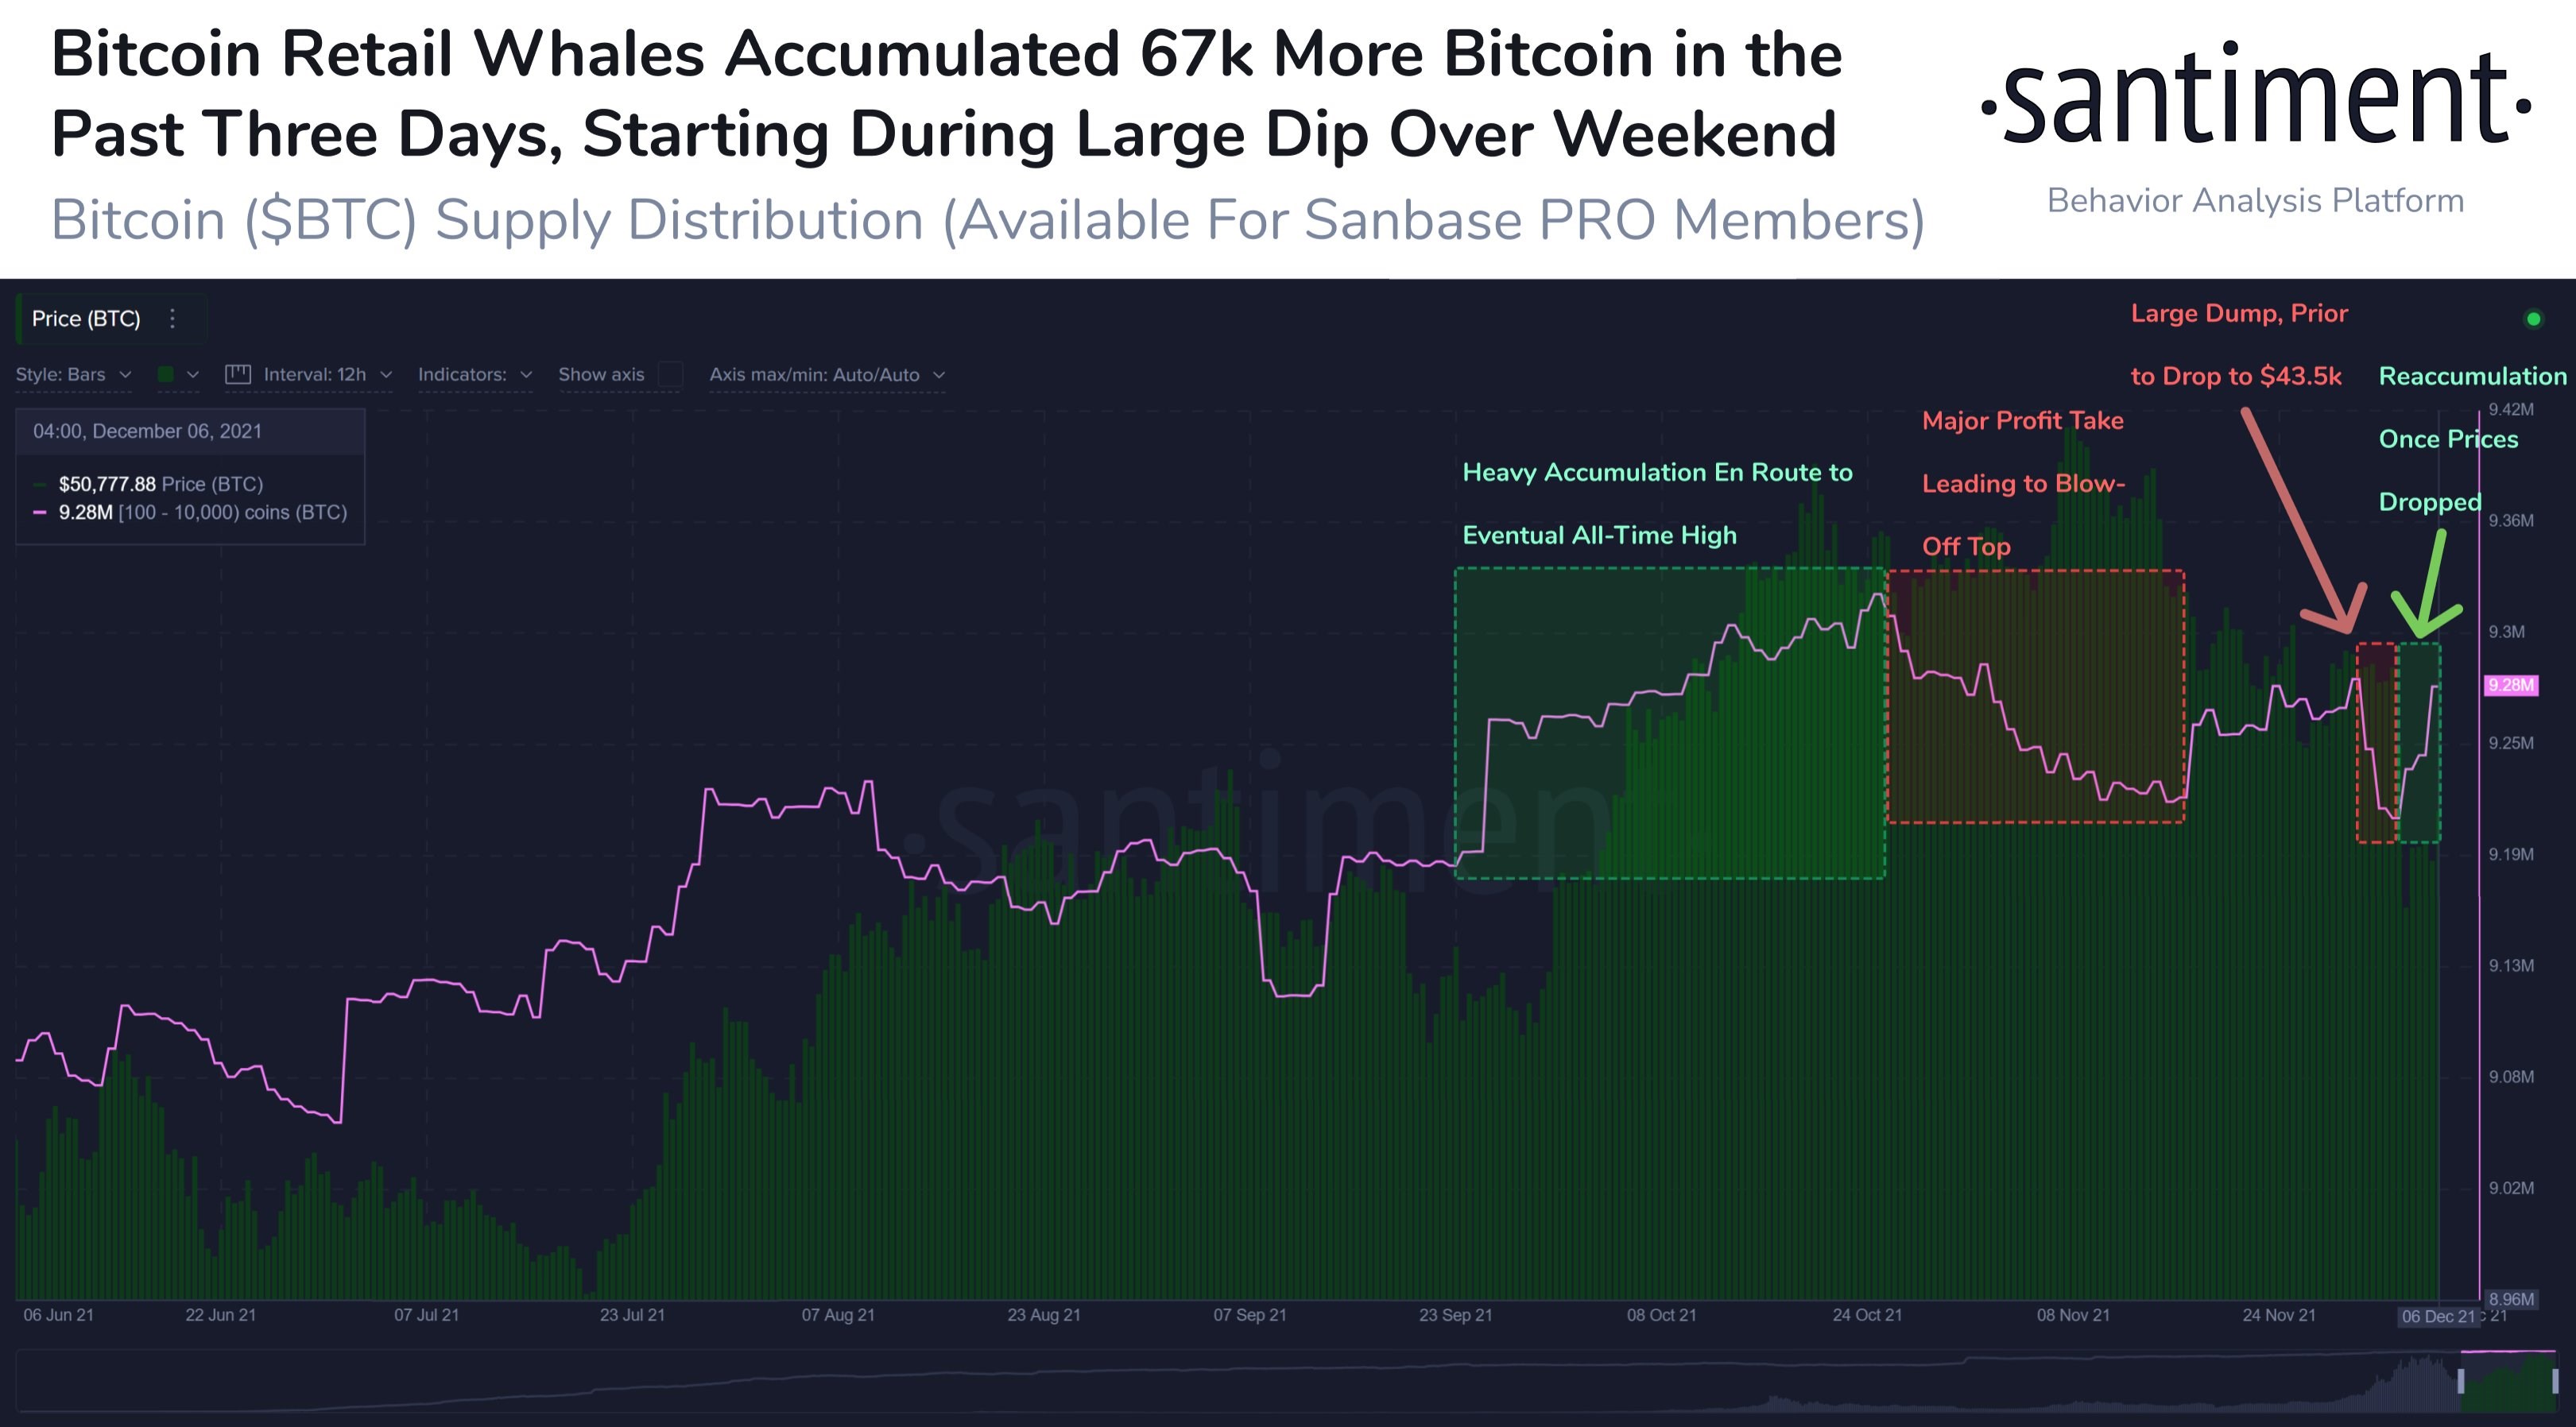 Balinalar BTC'deki son düşüş sırasında 67 bin Bitcoin satın aldı